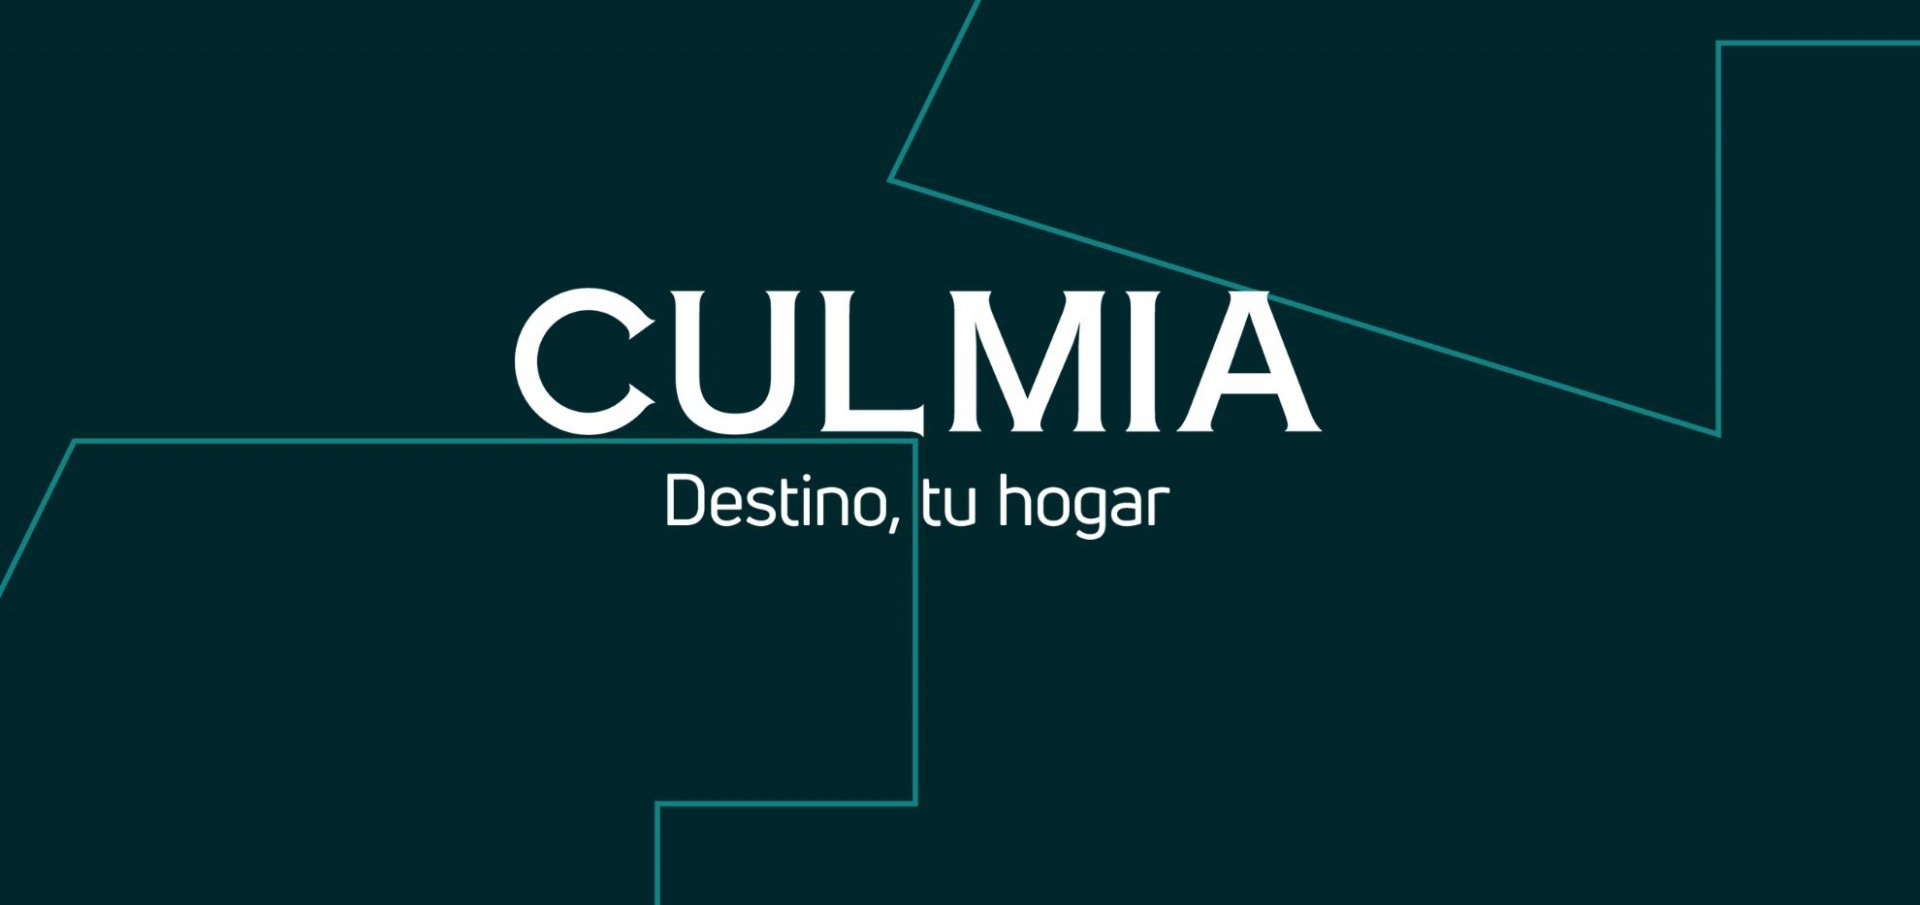 Acuerdo entre Culmia y Citibox para la instalación de buzones inteligentes en viviendas de Madrid